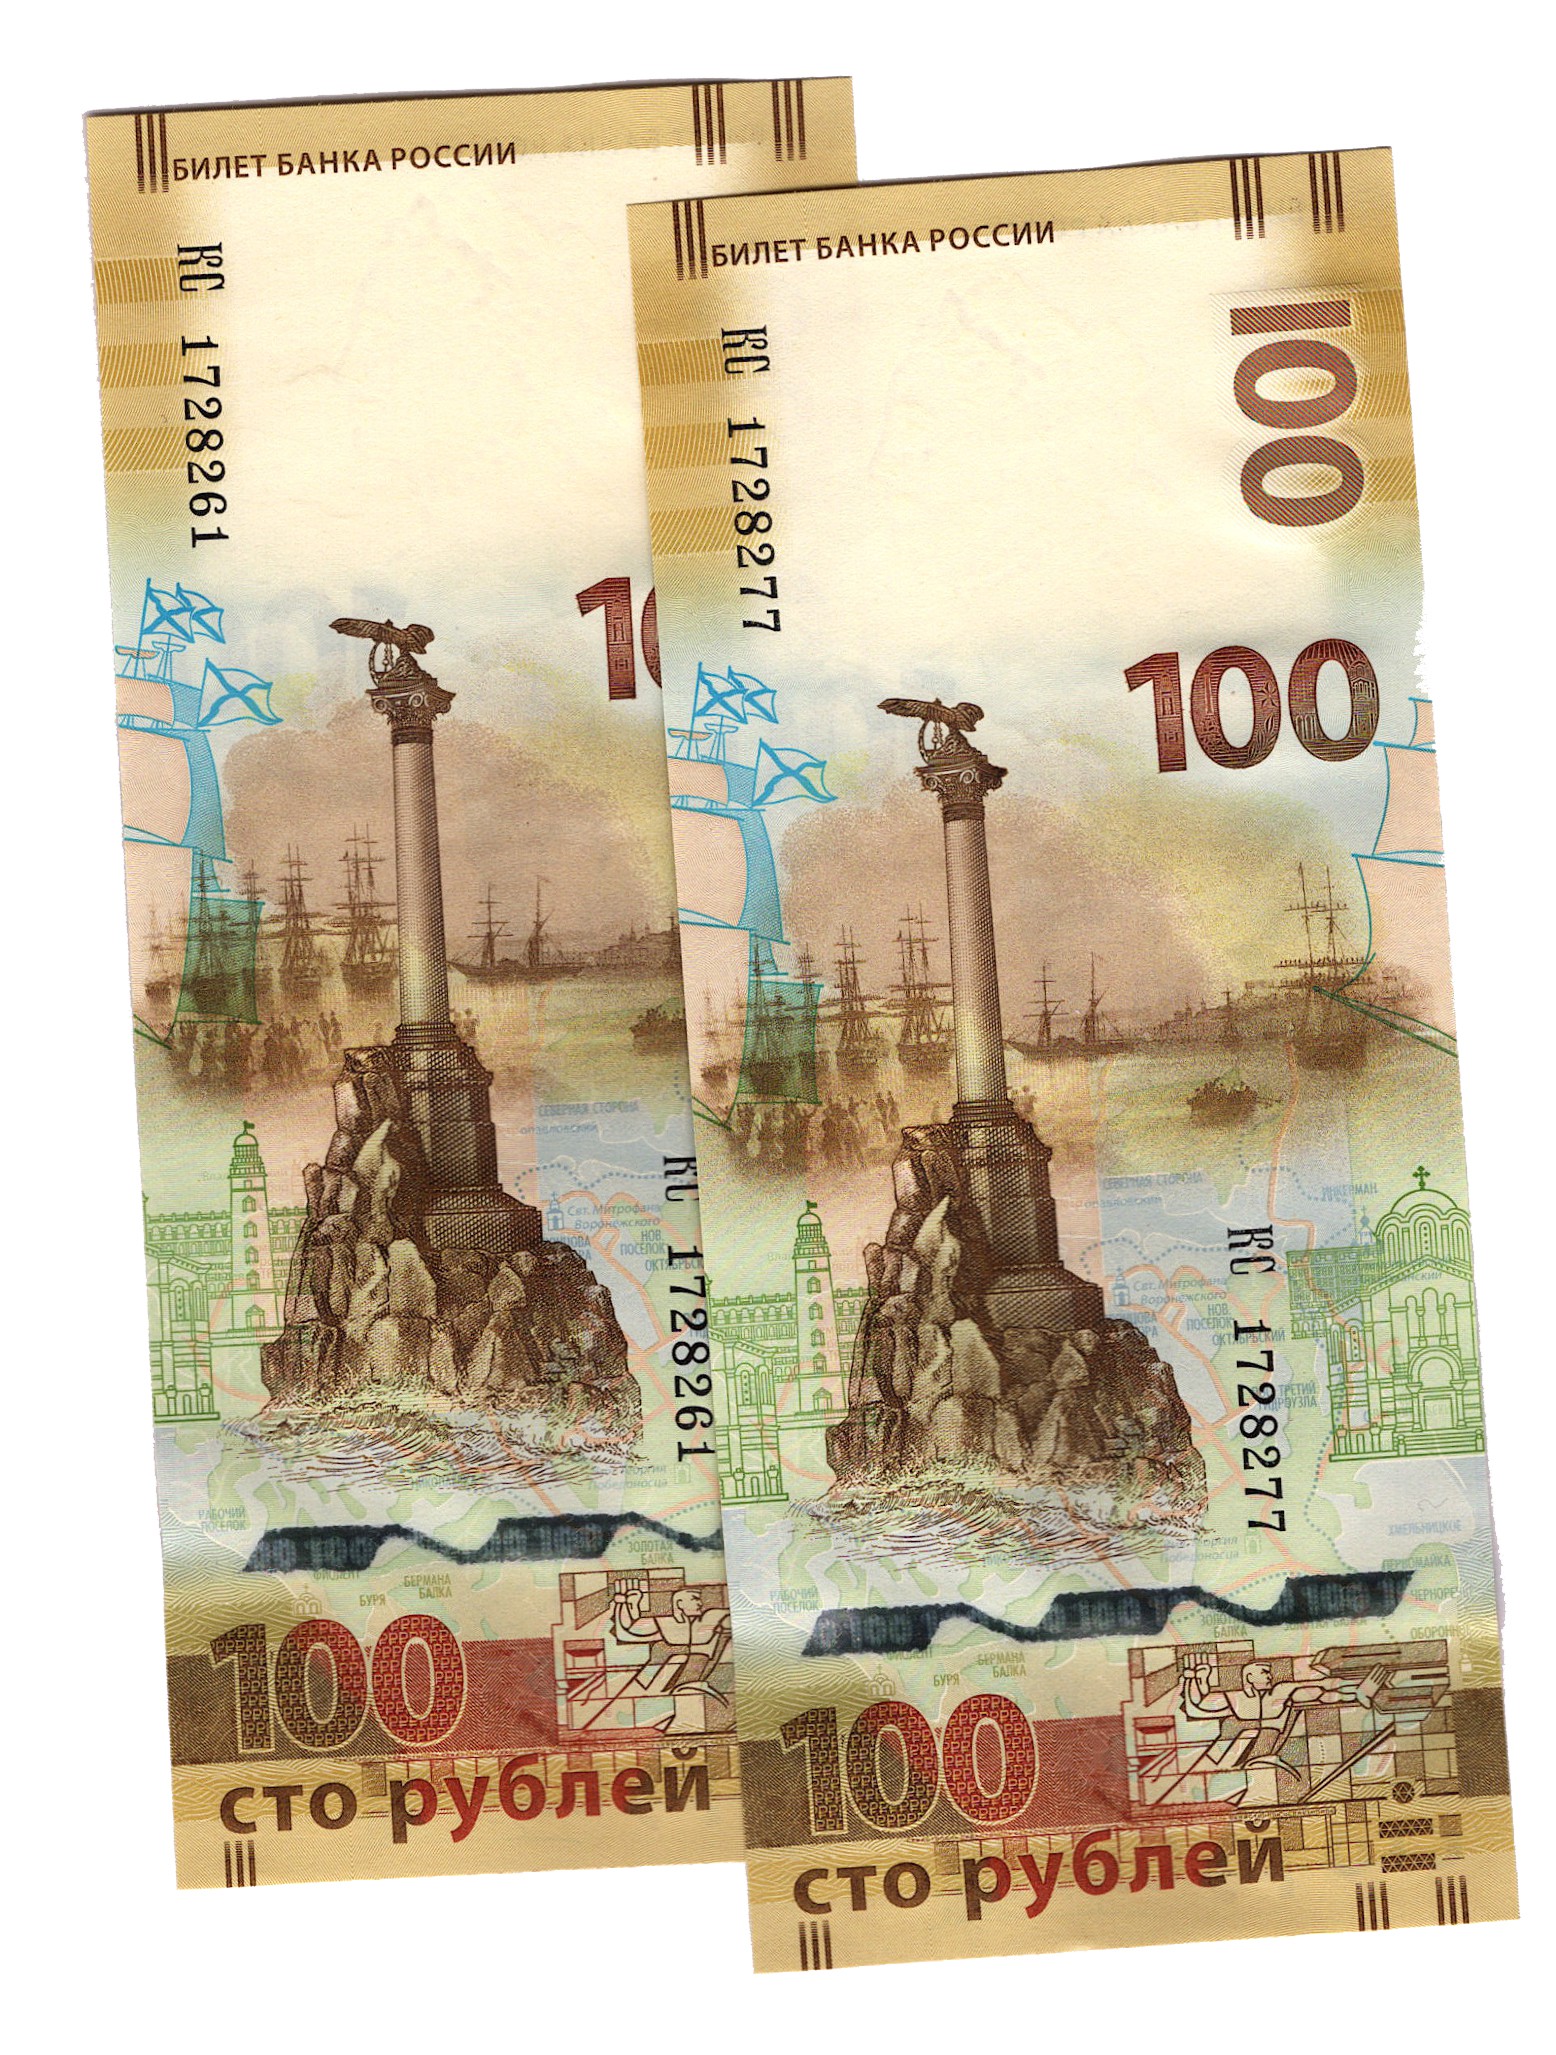 Russia 100 Rubles 2015 Crimea Commemorative/p275 UNC 